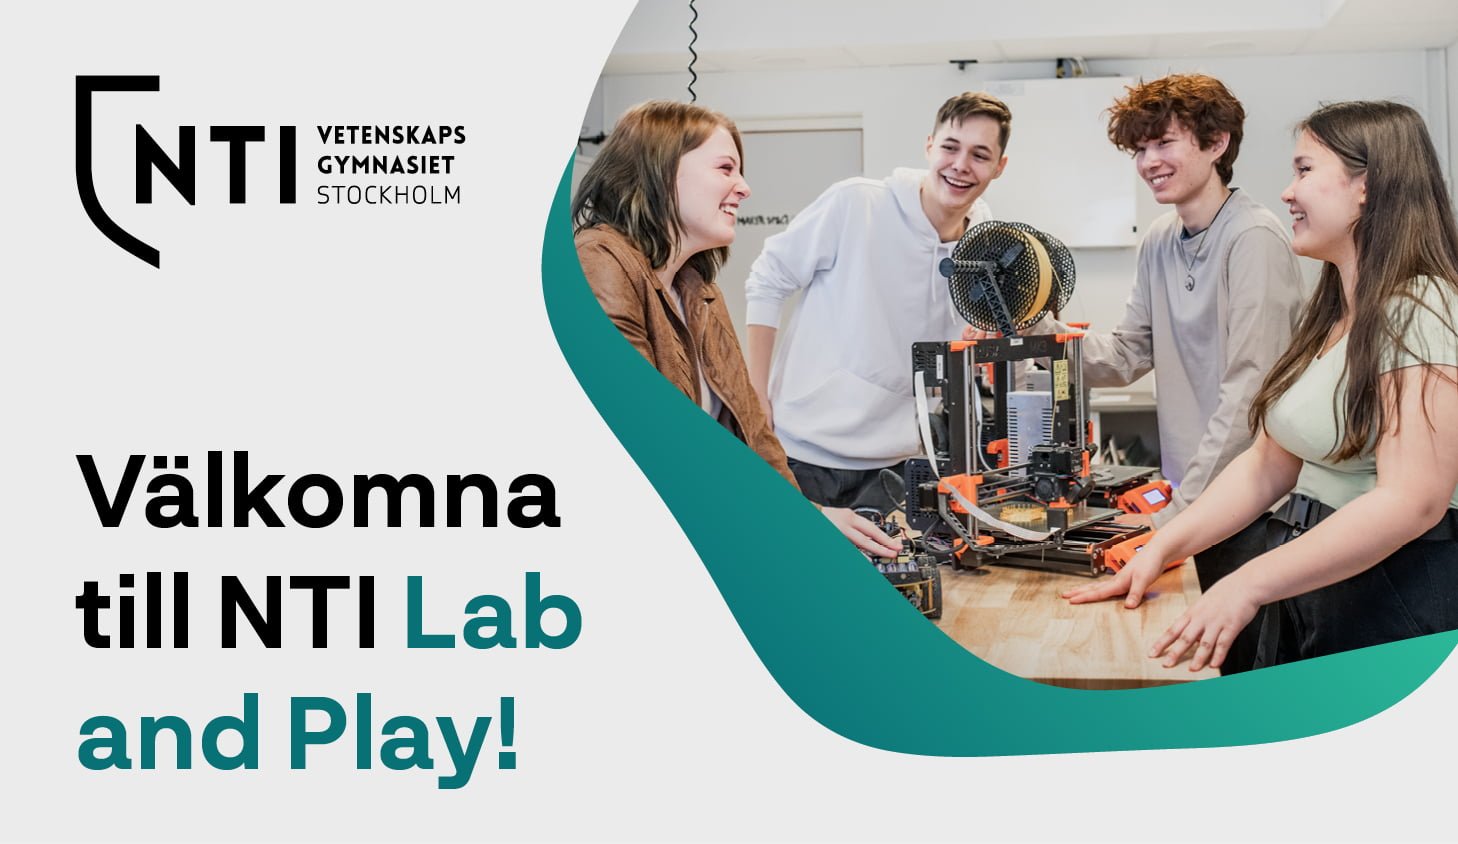 Inbjudan till Lab and play på NTI Vetenskapsgymnasiet Stockholm